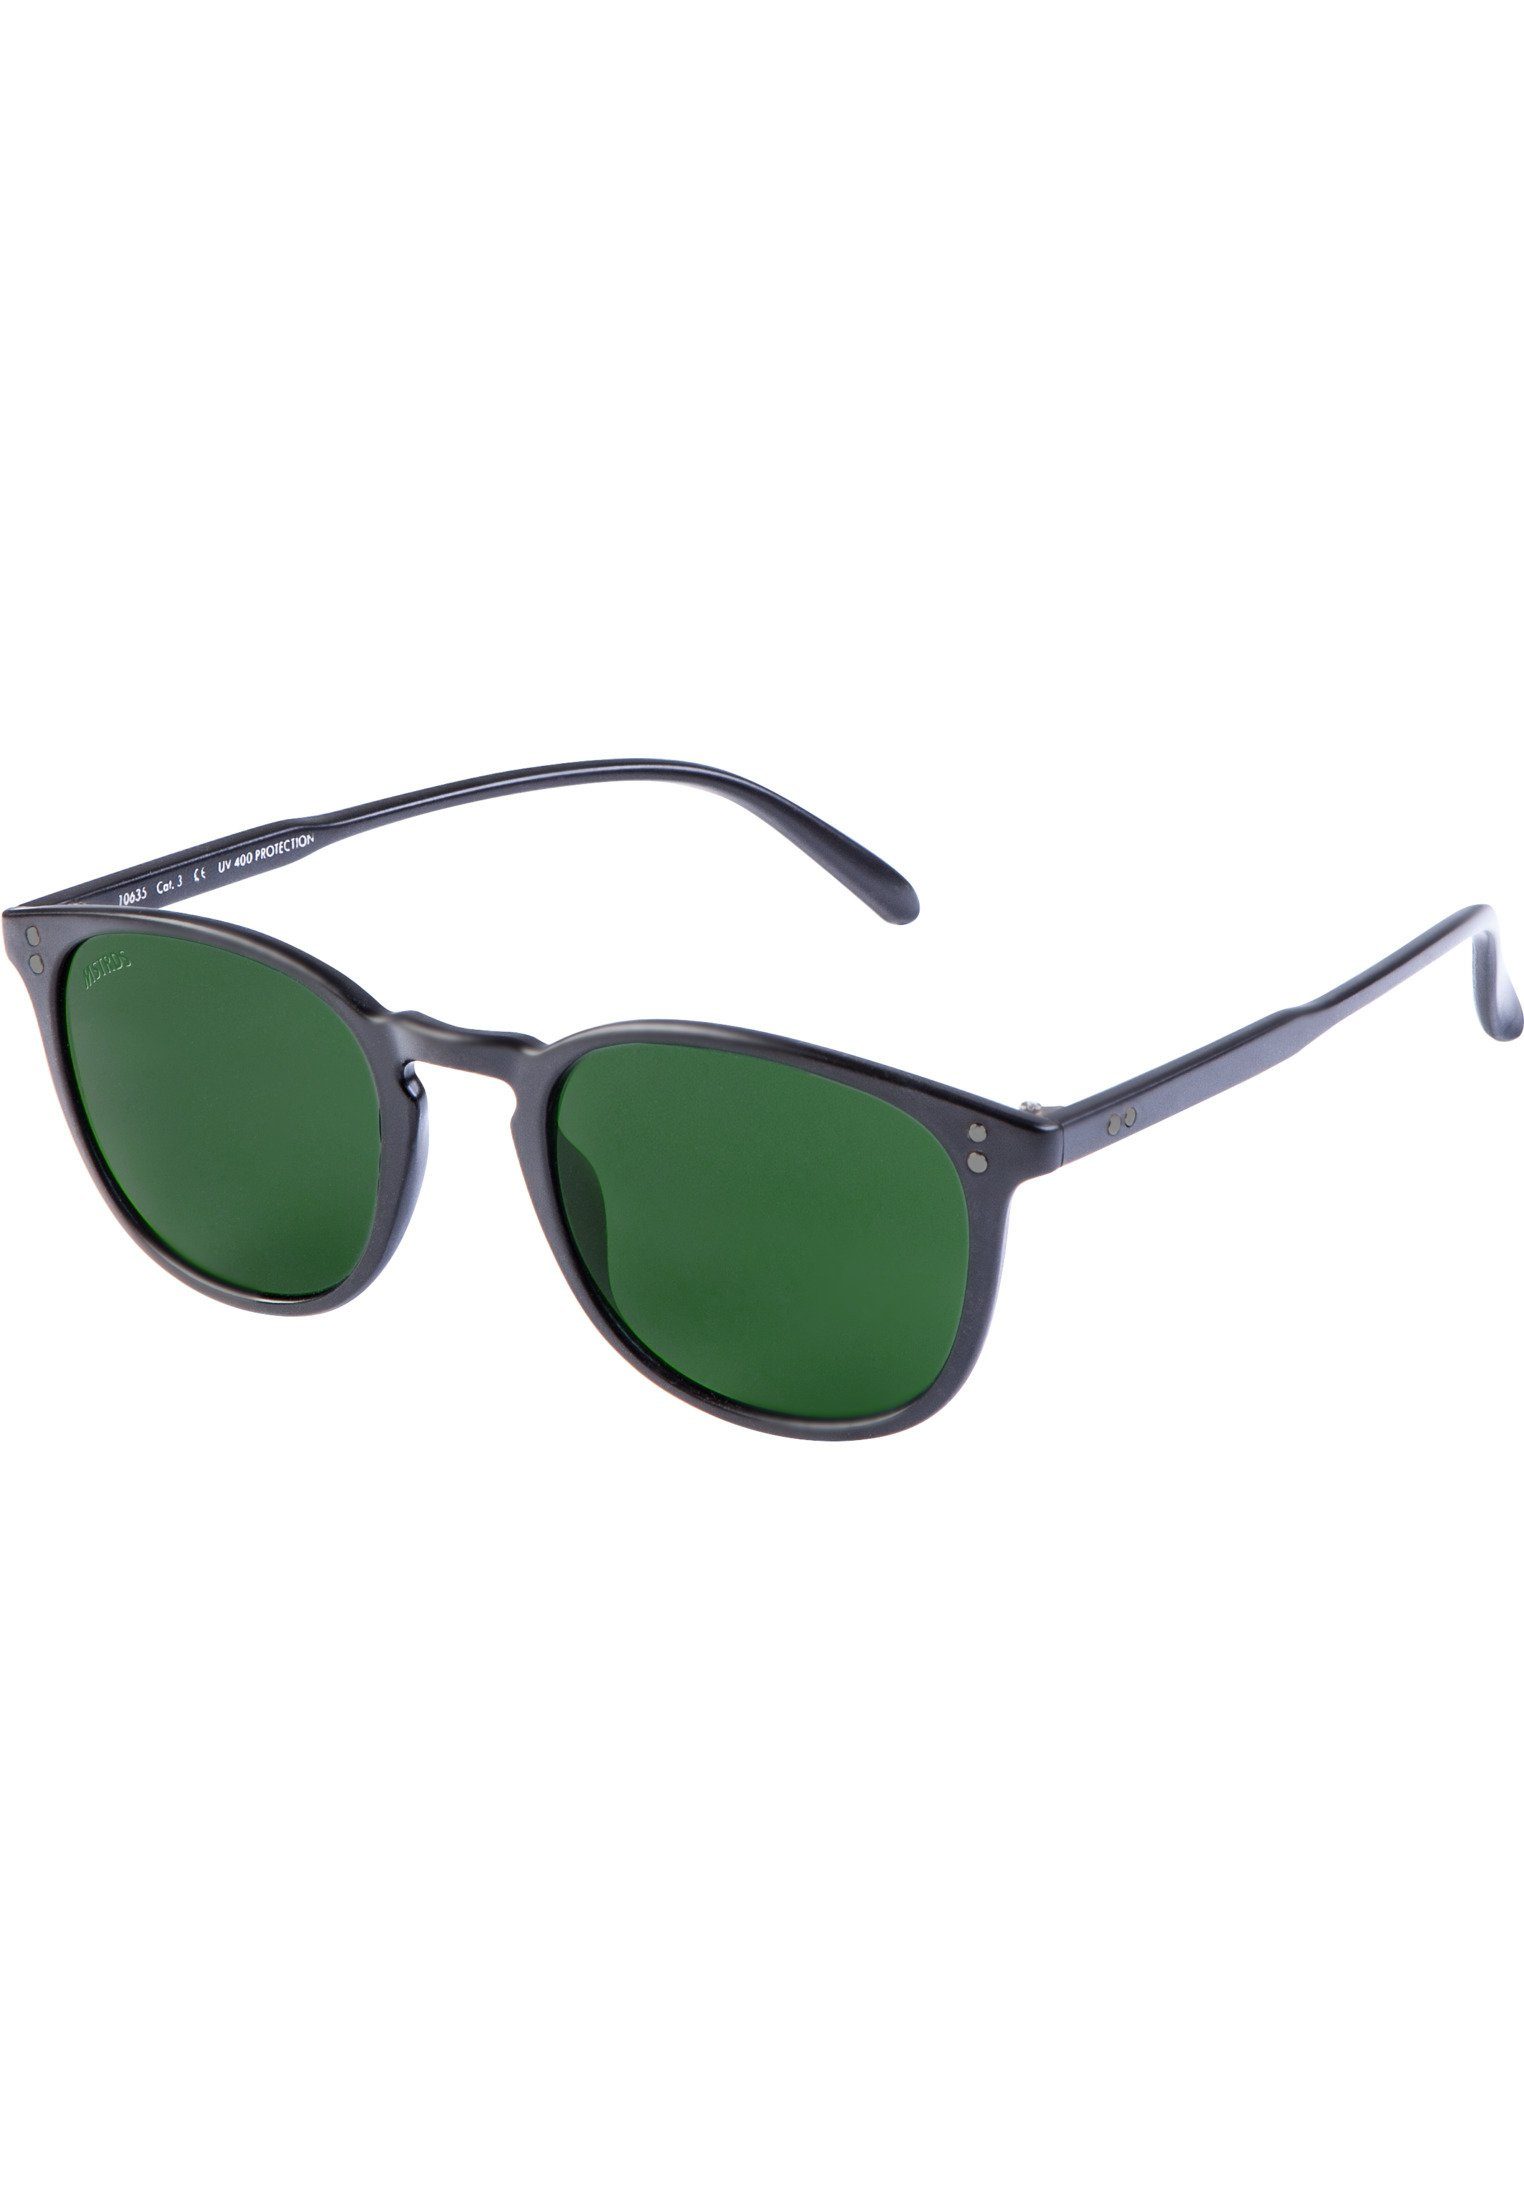 Sunglasses MSTRDS Accessoires Sonnenbrille Arthur blk/grn